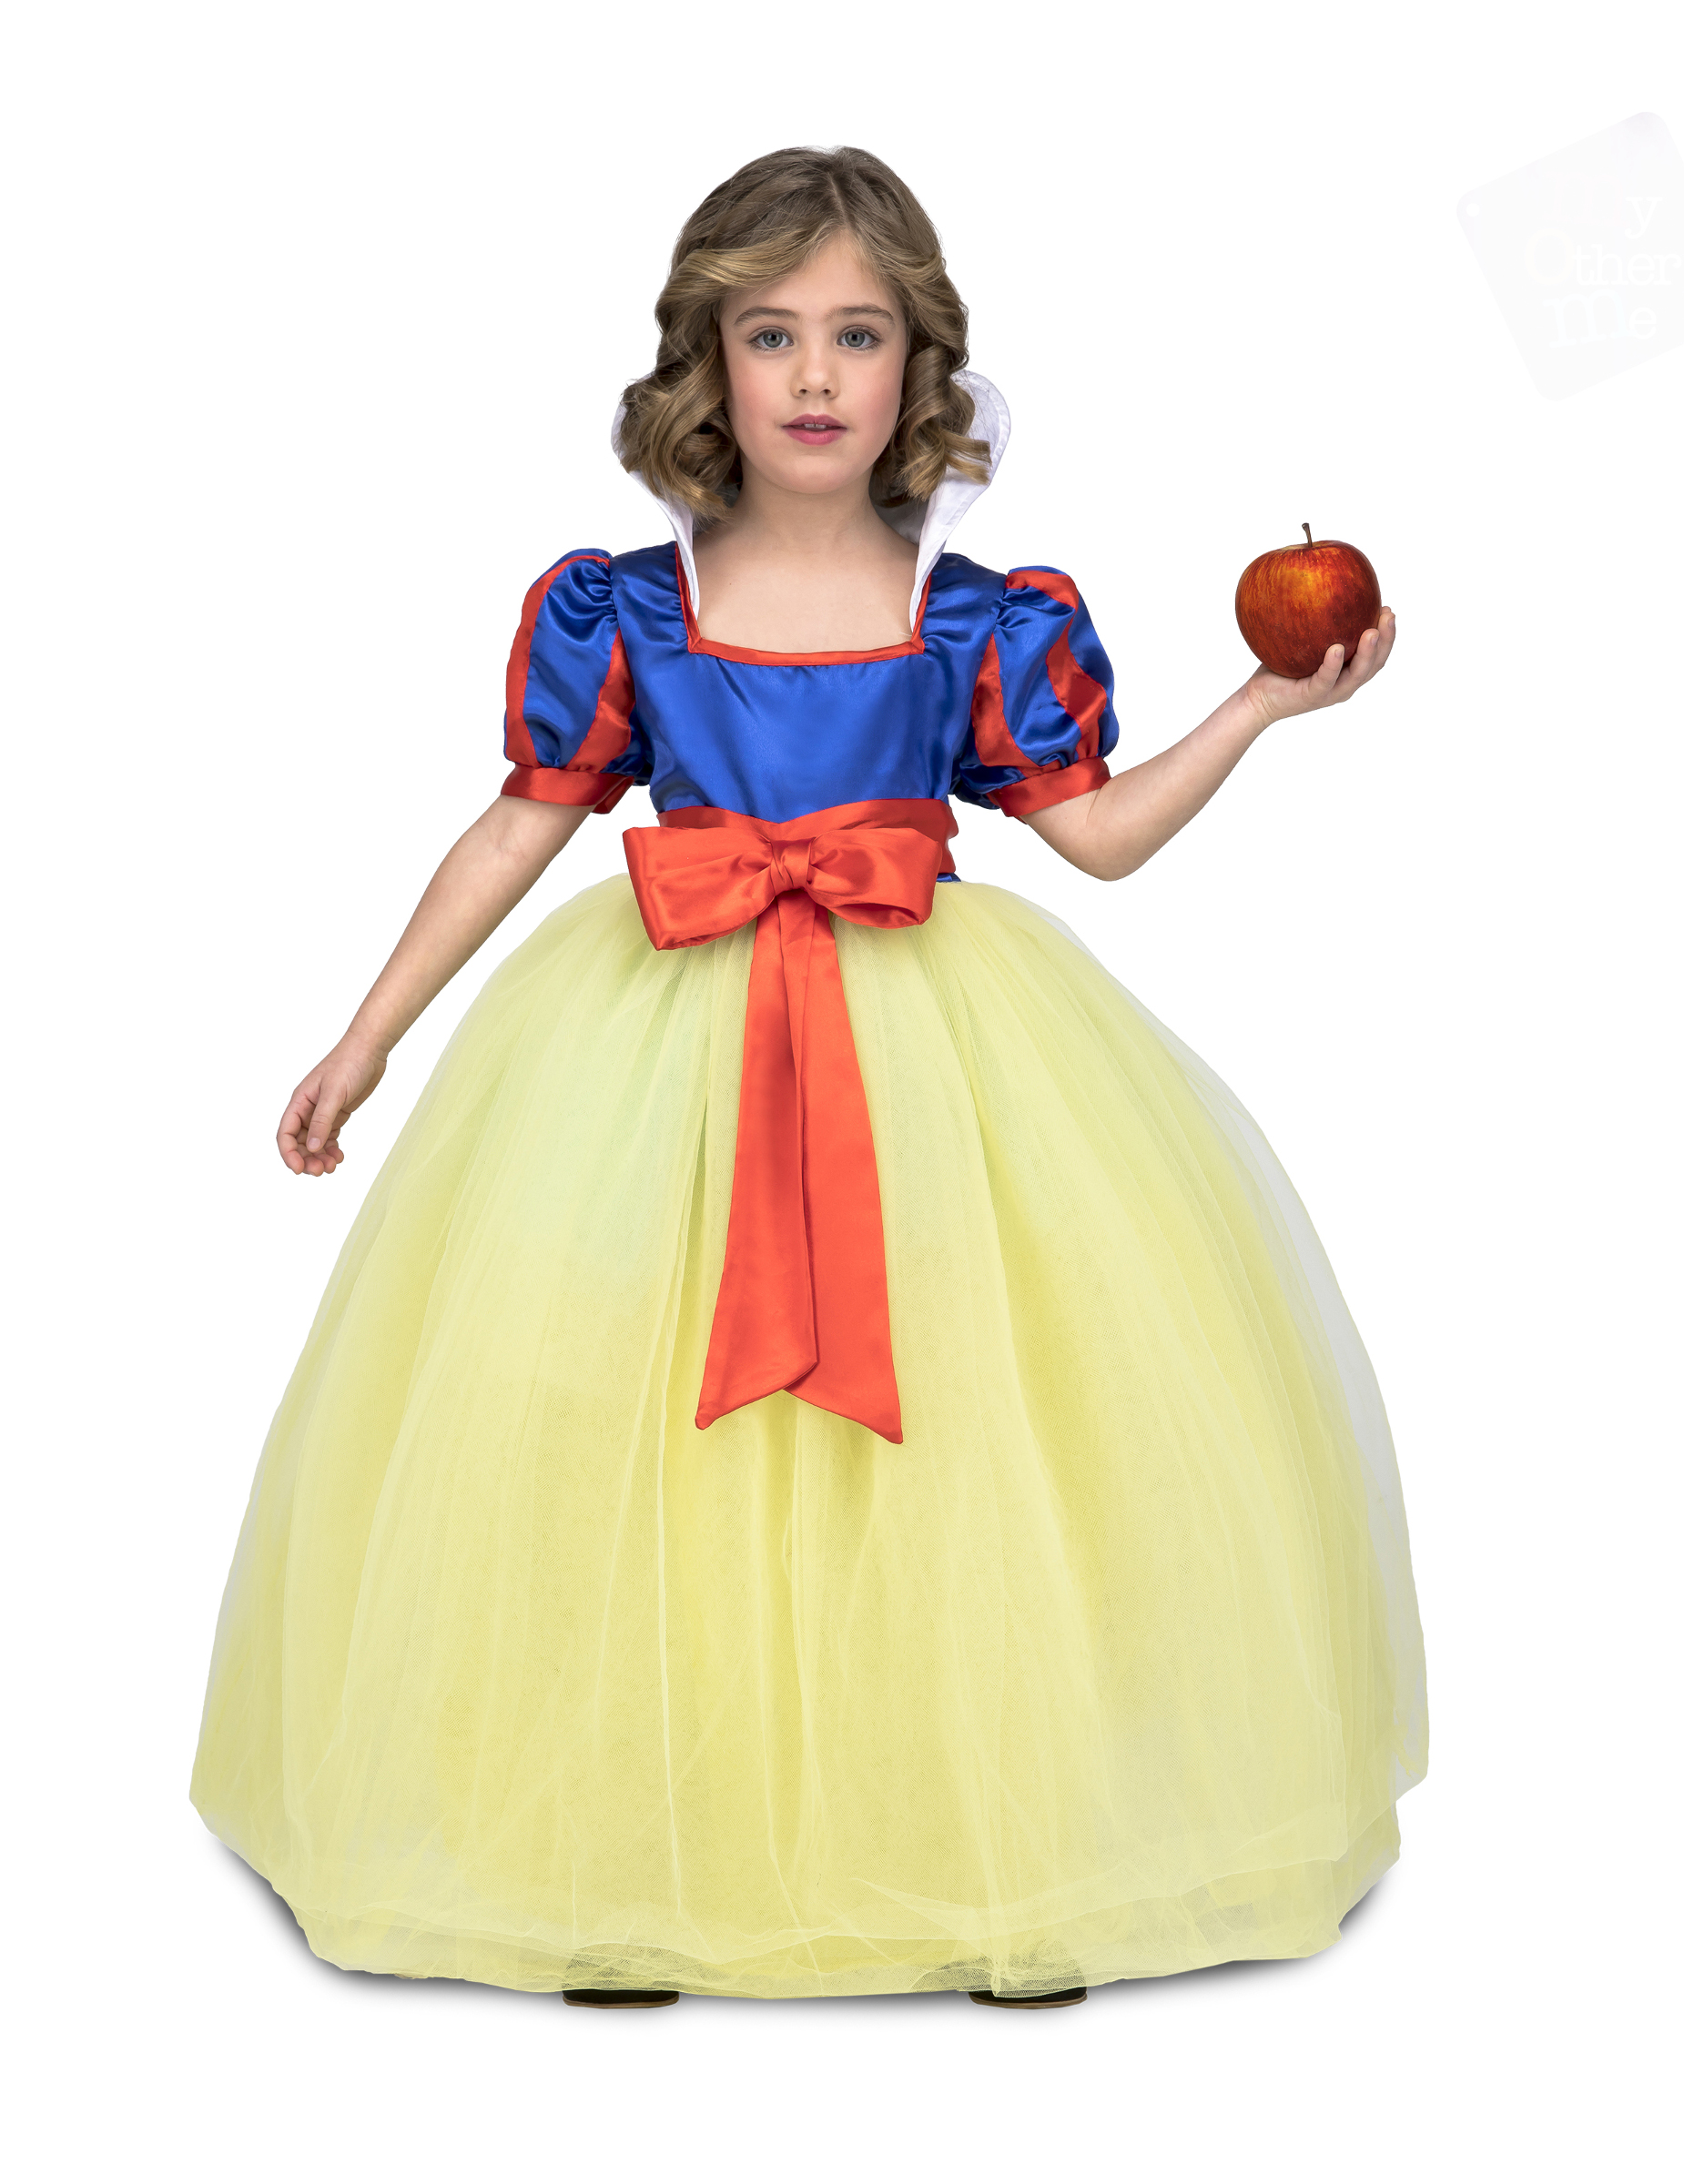 Märchen-Prinzessin-Kostüm für Mädchen Faschingskostüm gelb-blau-rot von VIVING COSTUMES / JUINSA